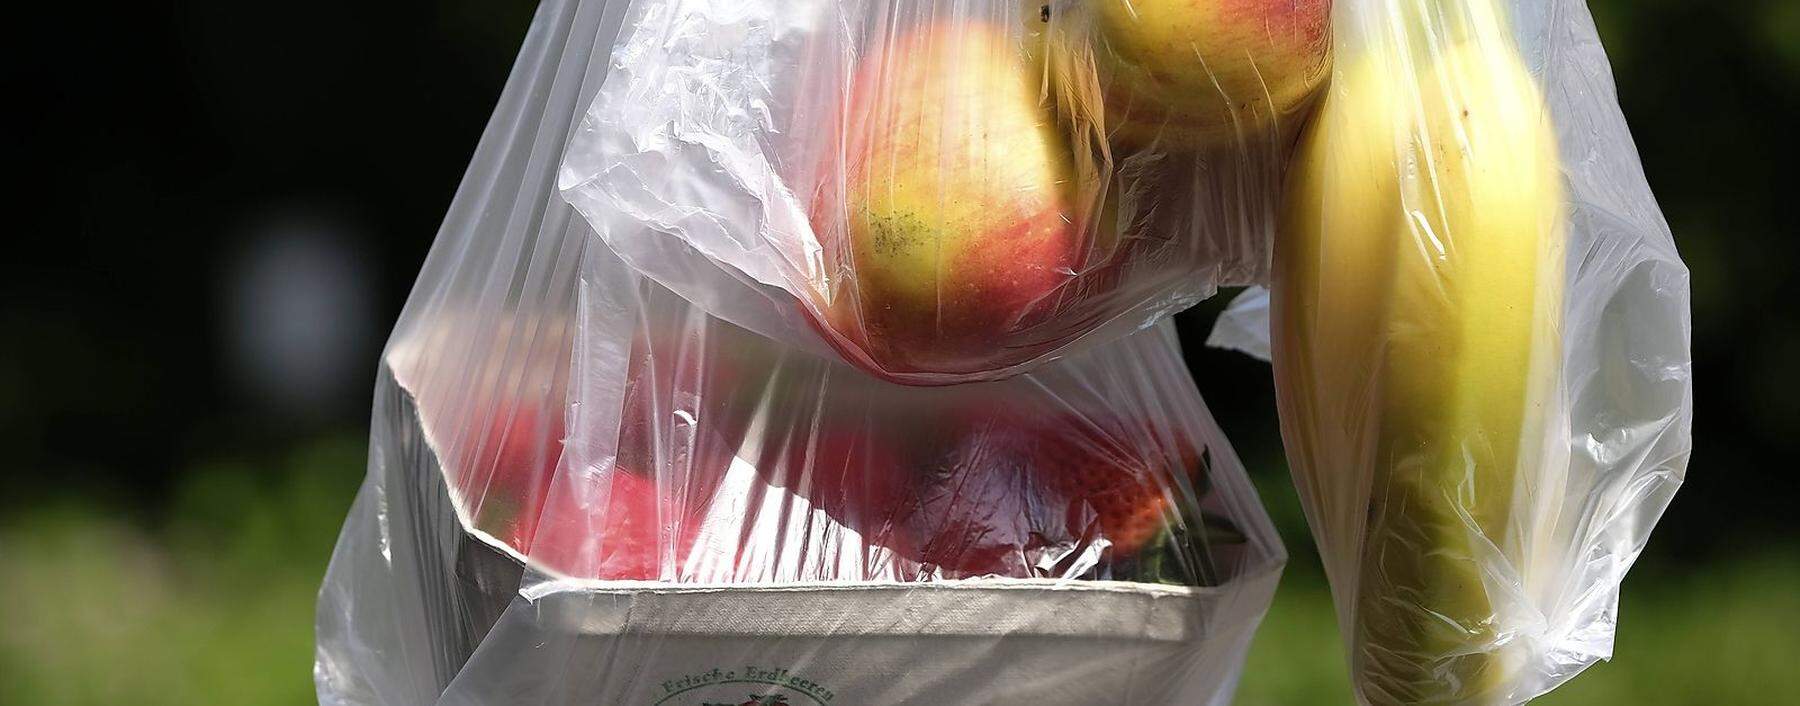 Obst in duennen Plastiktueten aus dem Supermarkt Fotro vom 04 06 19 Der Griff zur duennen Plasti